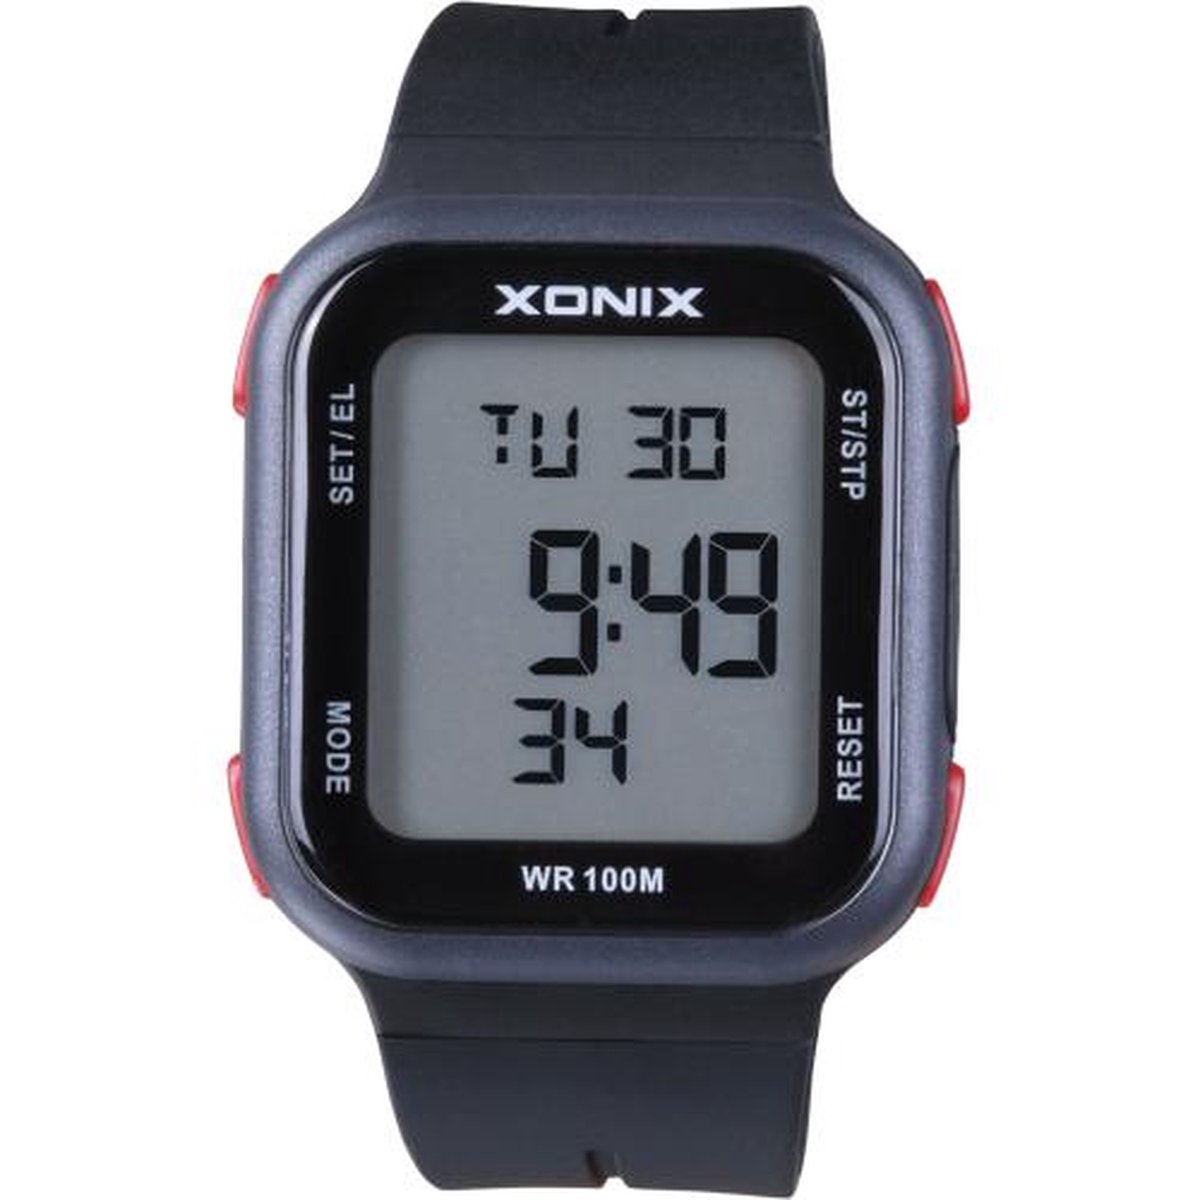 Xonix ZAA-006 - Horloge - Digitaal - Heren - Mannen - Rechthoek - Siliconen band - ABS - Cijfers - Achtergrondverlichting - Stappenteller - Temperatuur - Alarm - Start-Stop - Chronograaf - Waterdicht - 10 ATM - Zwart - Grijs - Rood